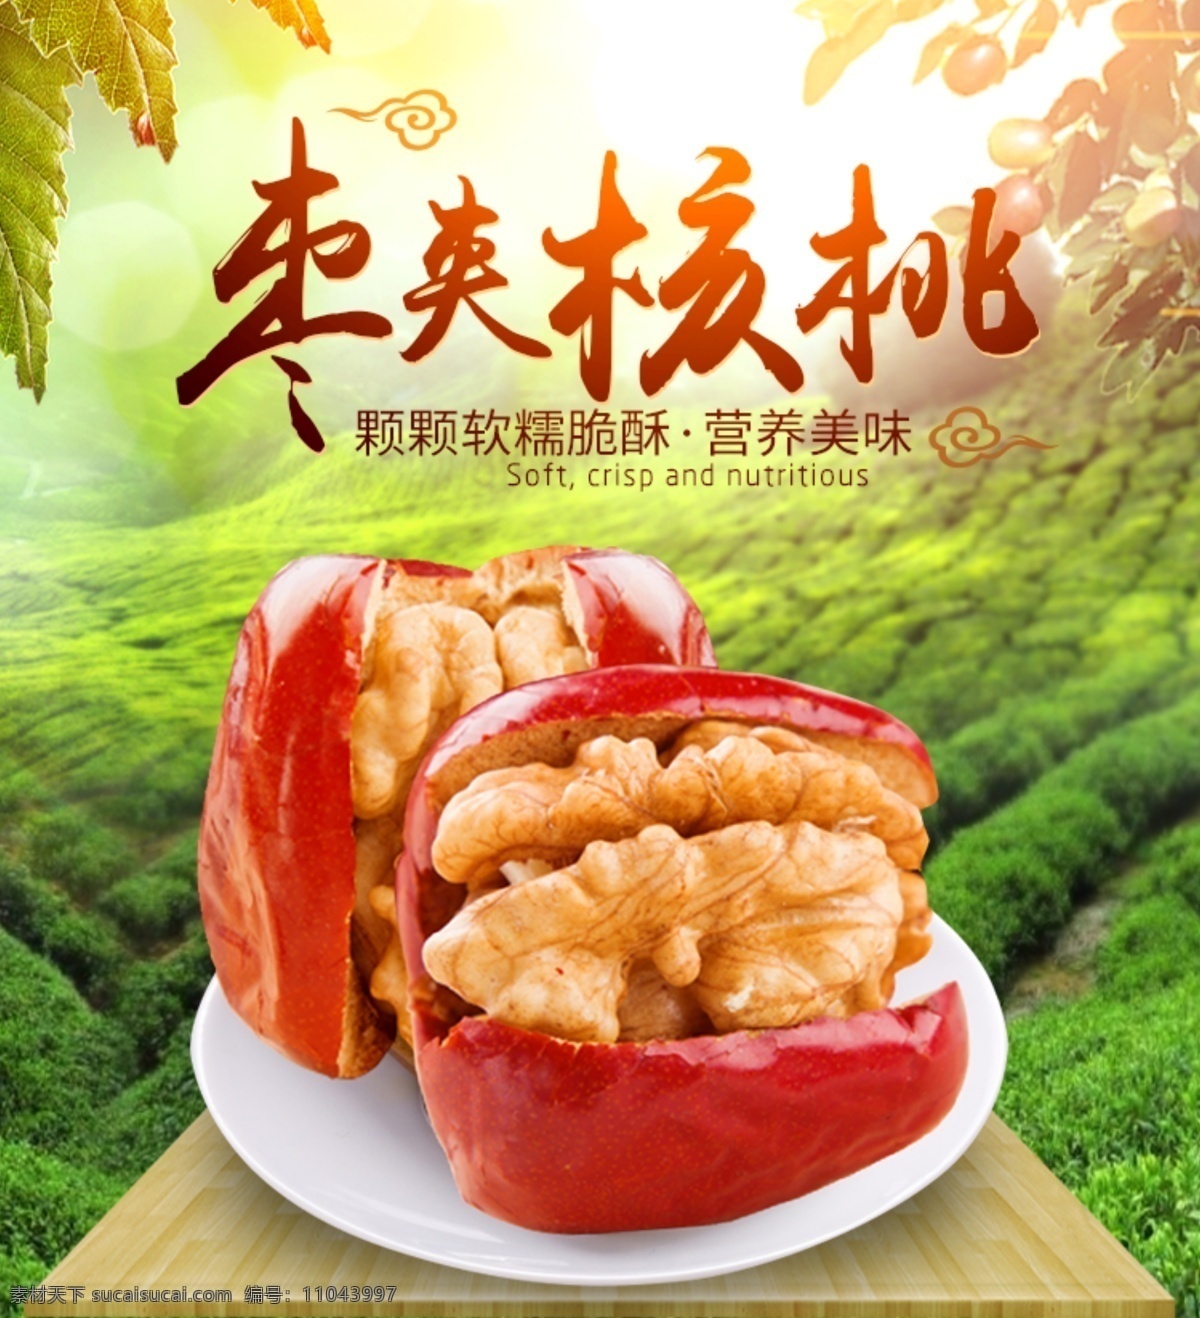 红枣 夹 核桃 淘宝 主 图 枣夹核桃 枣 零食 美食 特产